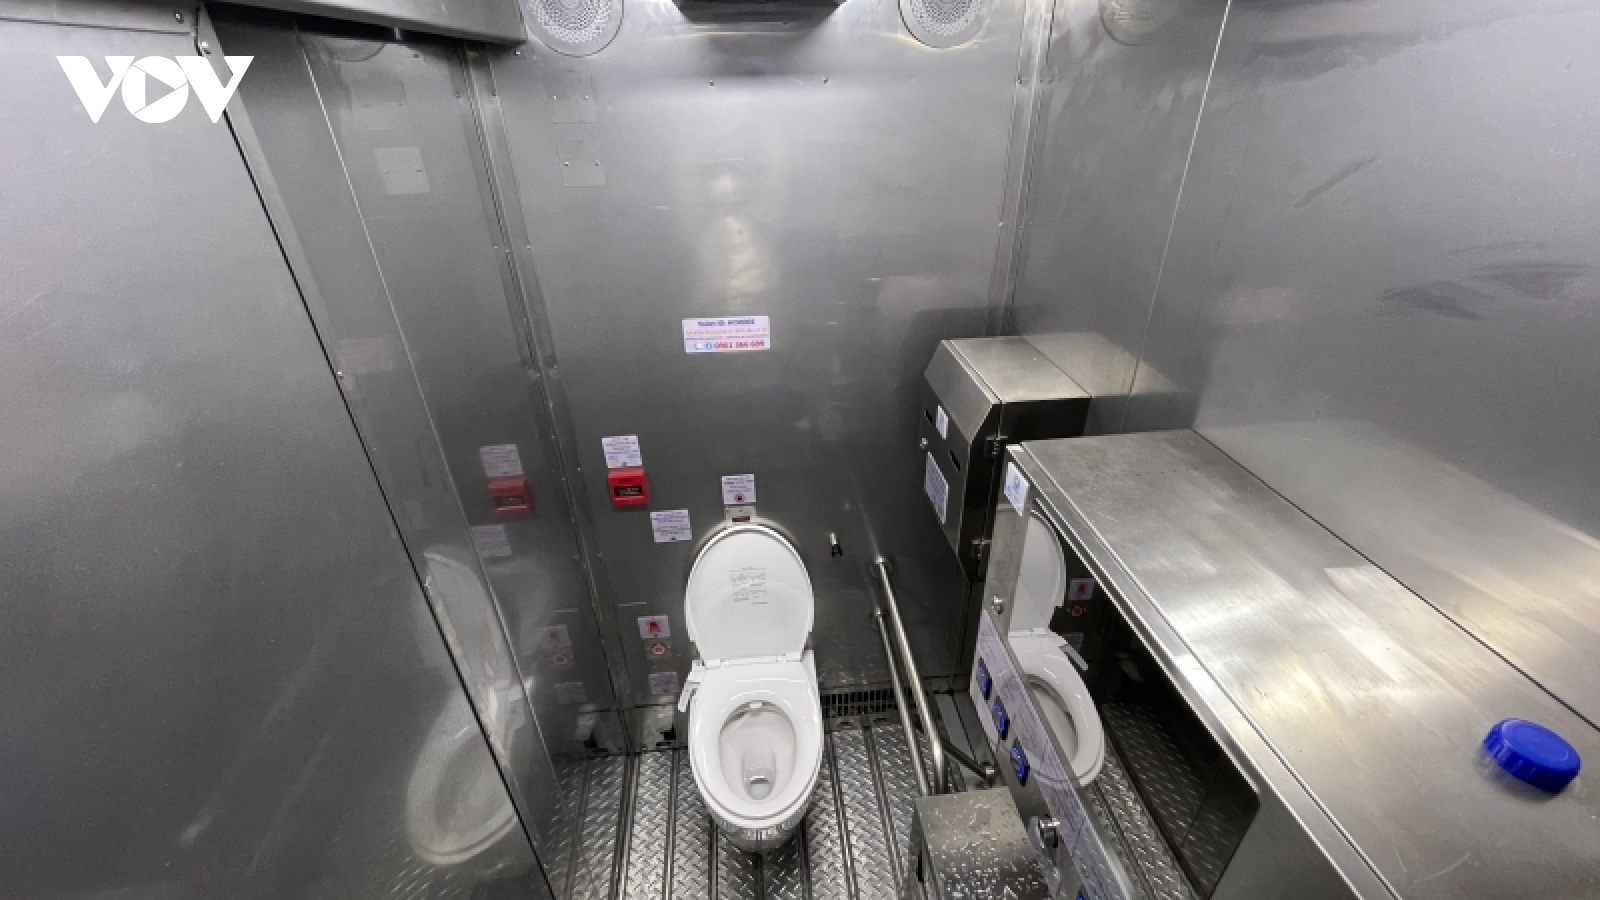 TP.HCM khánh thành 2 nhà vệ sinh công cộng hoàn toàn tự động, chuẩn quốc tế